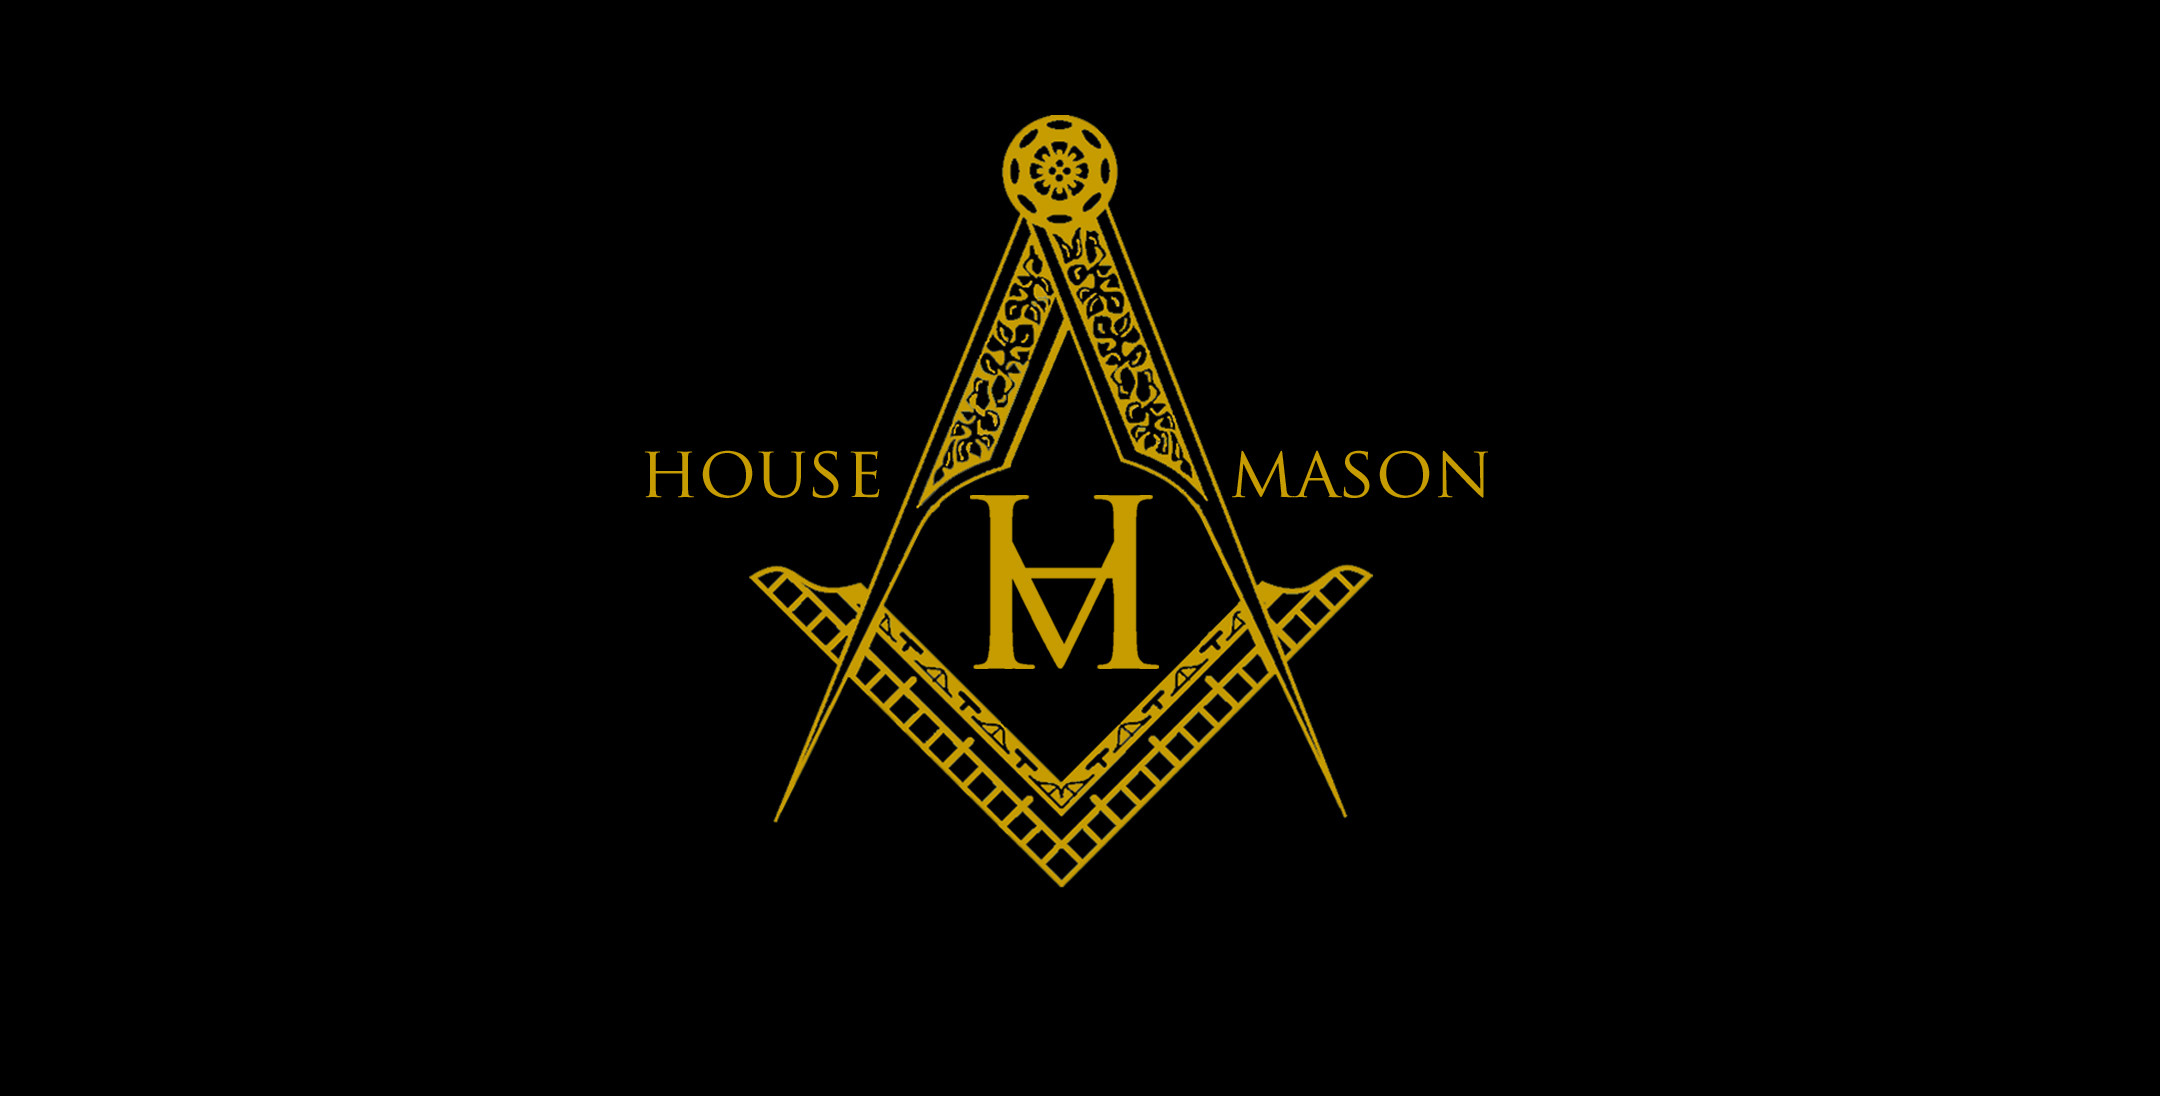 Mason Emblems and Logos Wallpaper 49 images